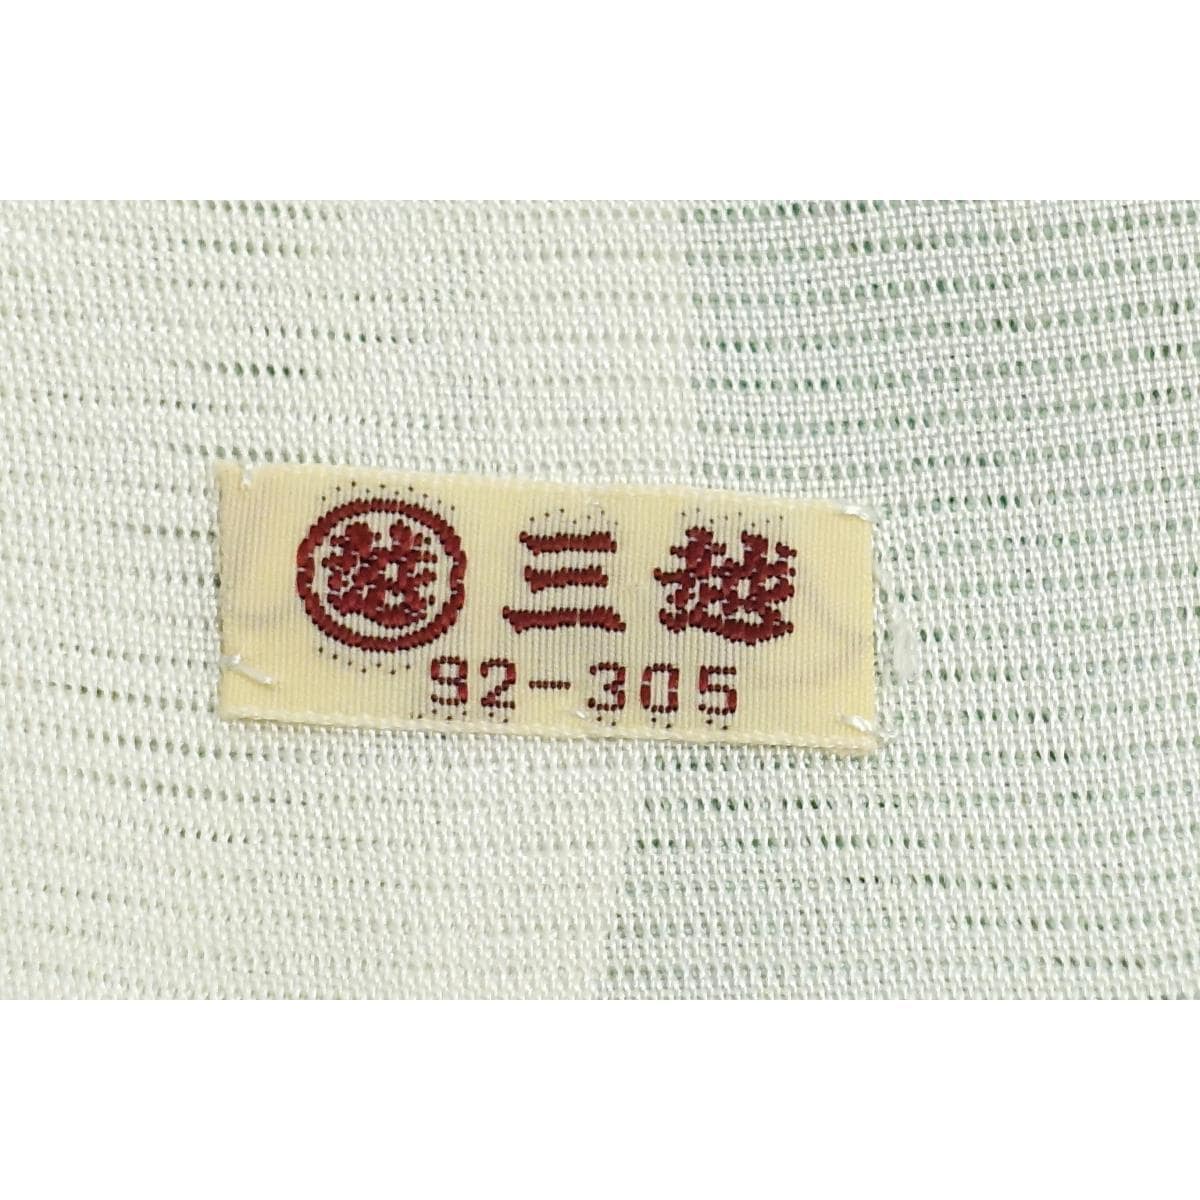 [Unused items] Single robe, komagari homongi, Yuzen processing